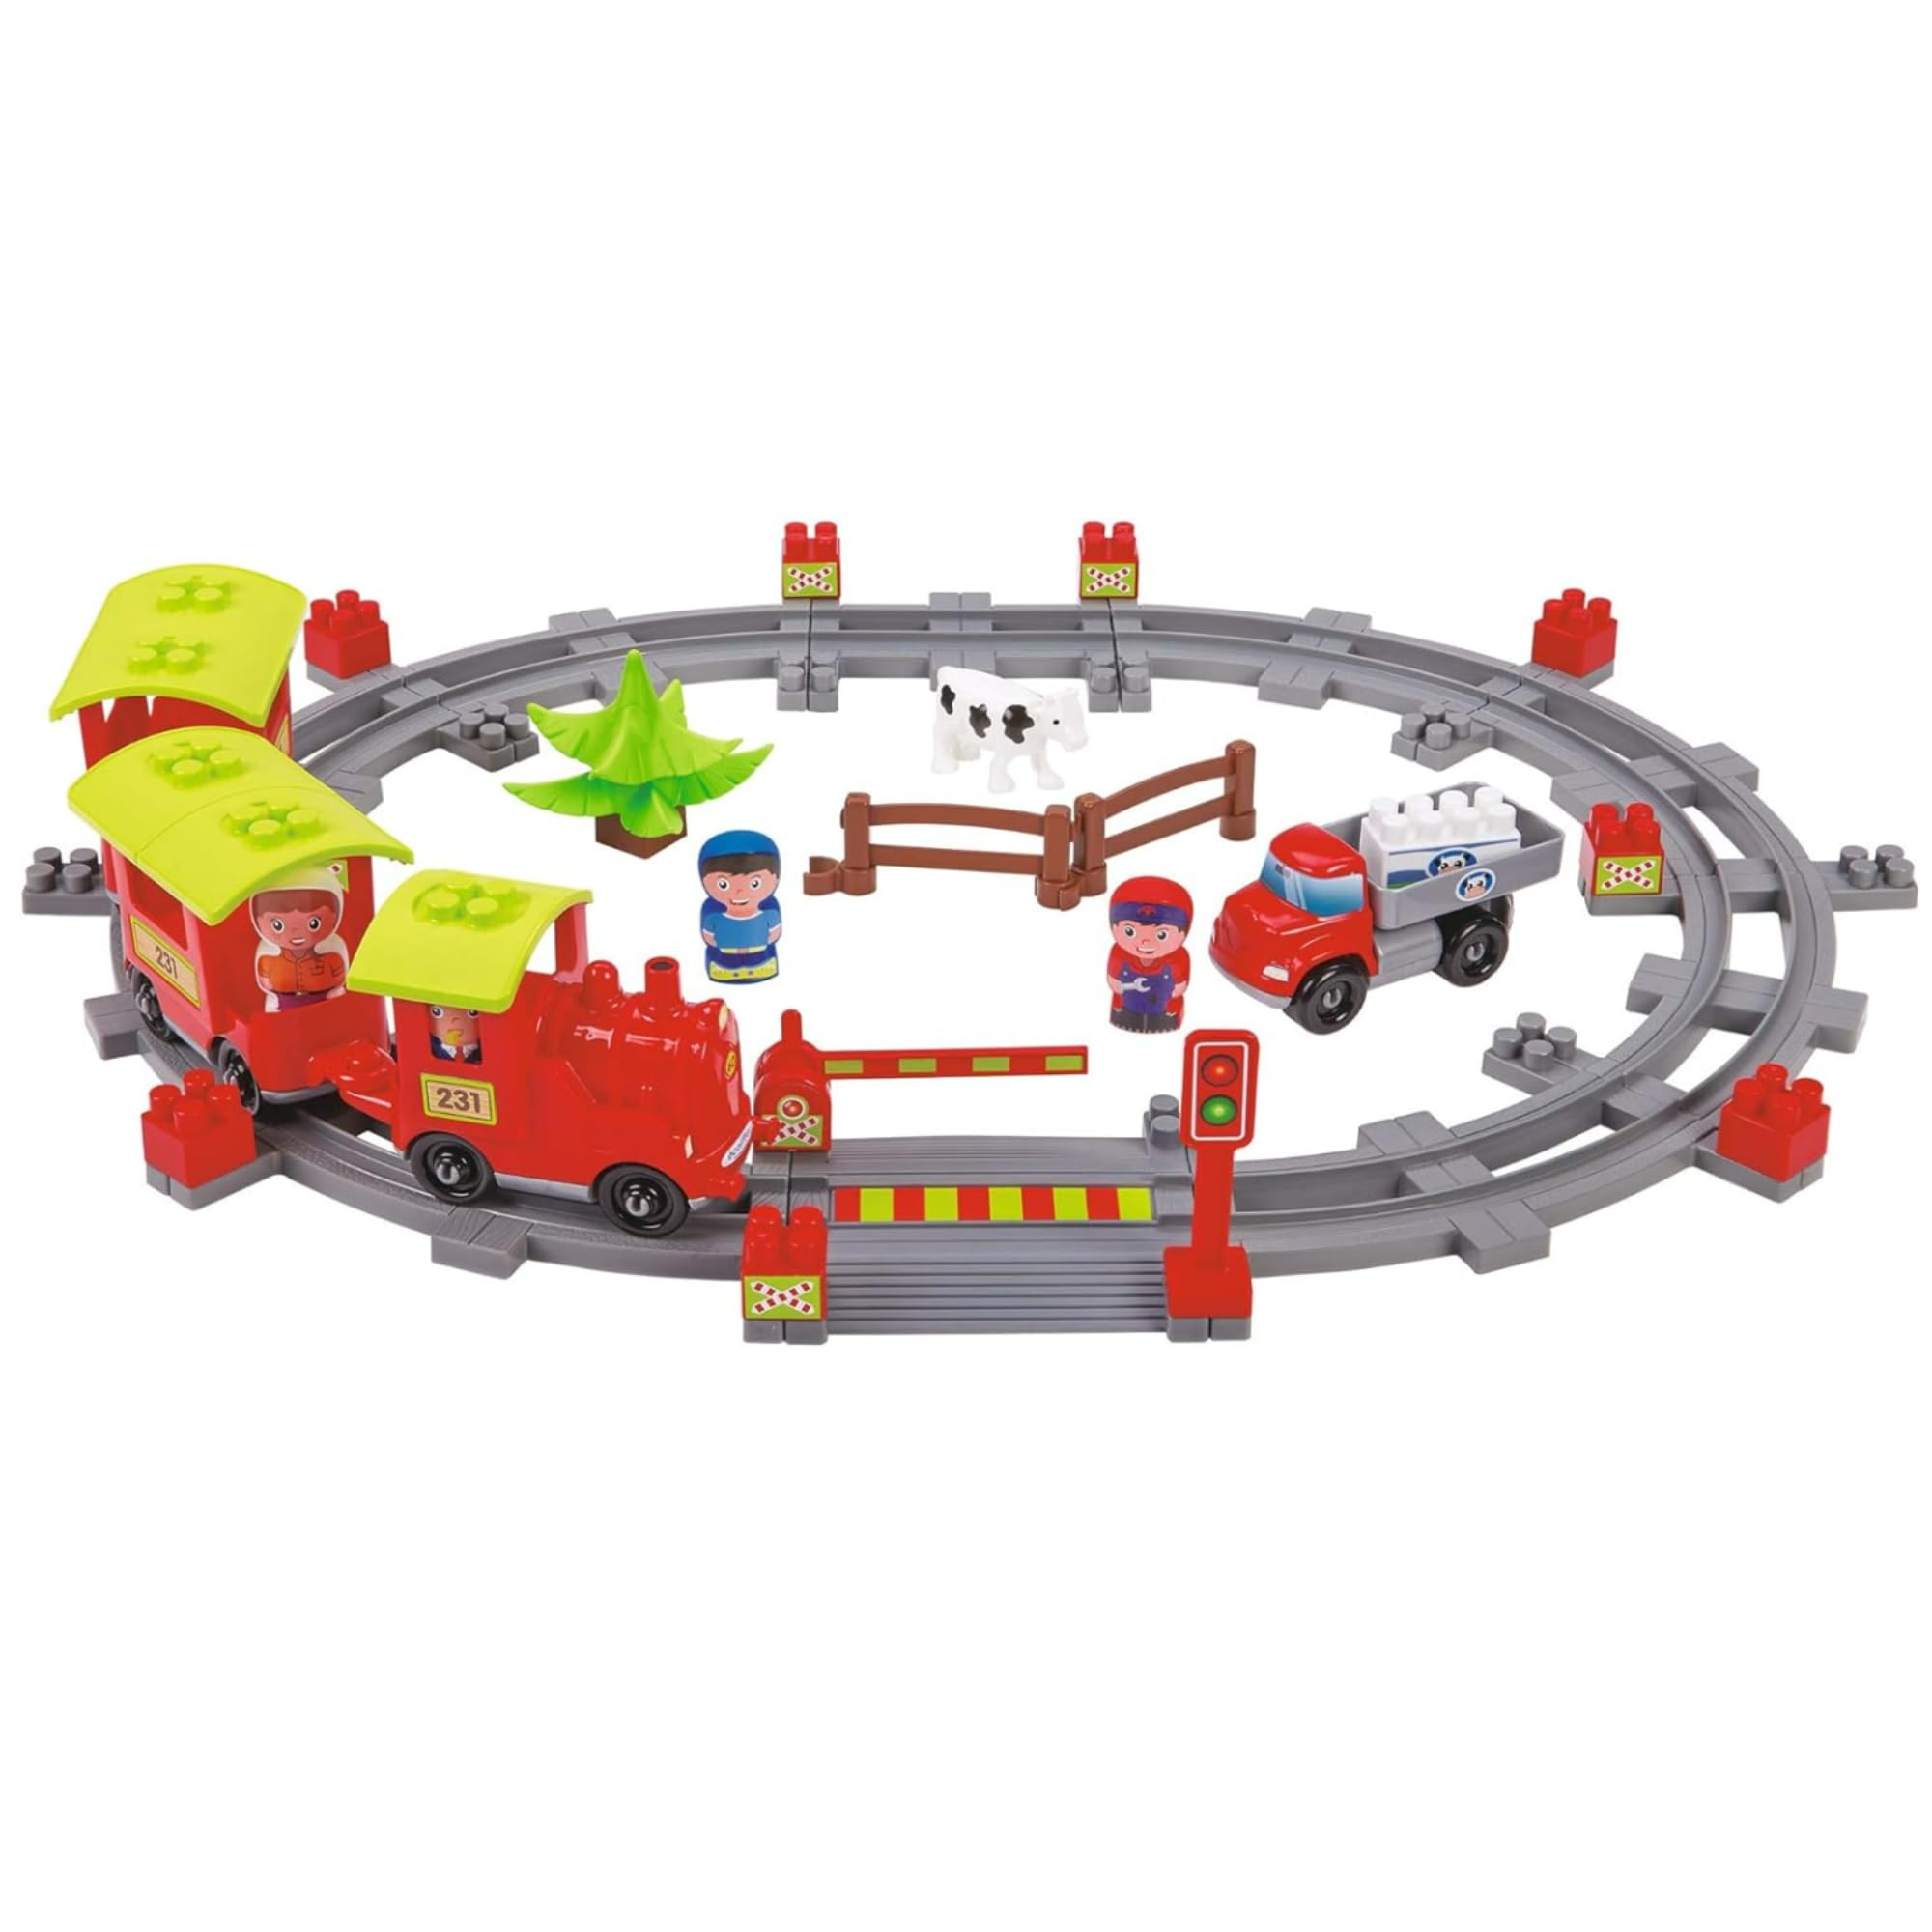 Ecoiffier – Abrick Eisenbahn Lokomotive – 69-teiliges Baustein-Set, mit Figuren, Tieren, Bahnübergang, Gleisen, für Kinder und Kleinkinder ab 18 Monaten